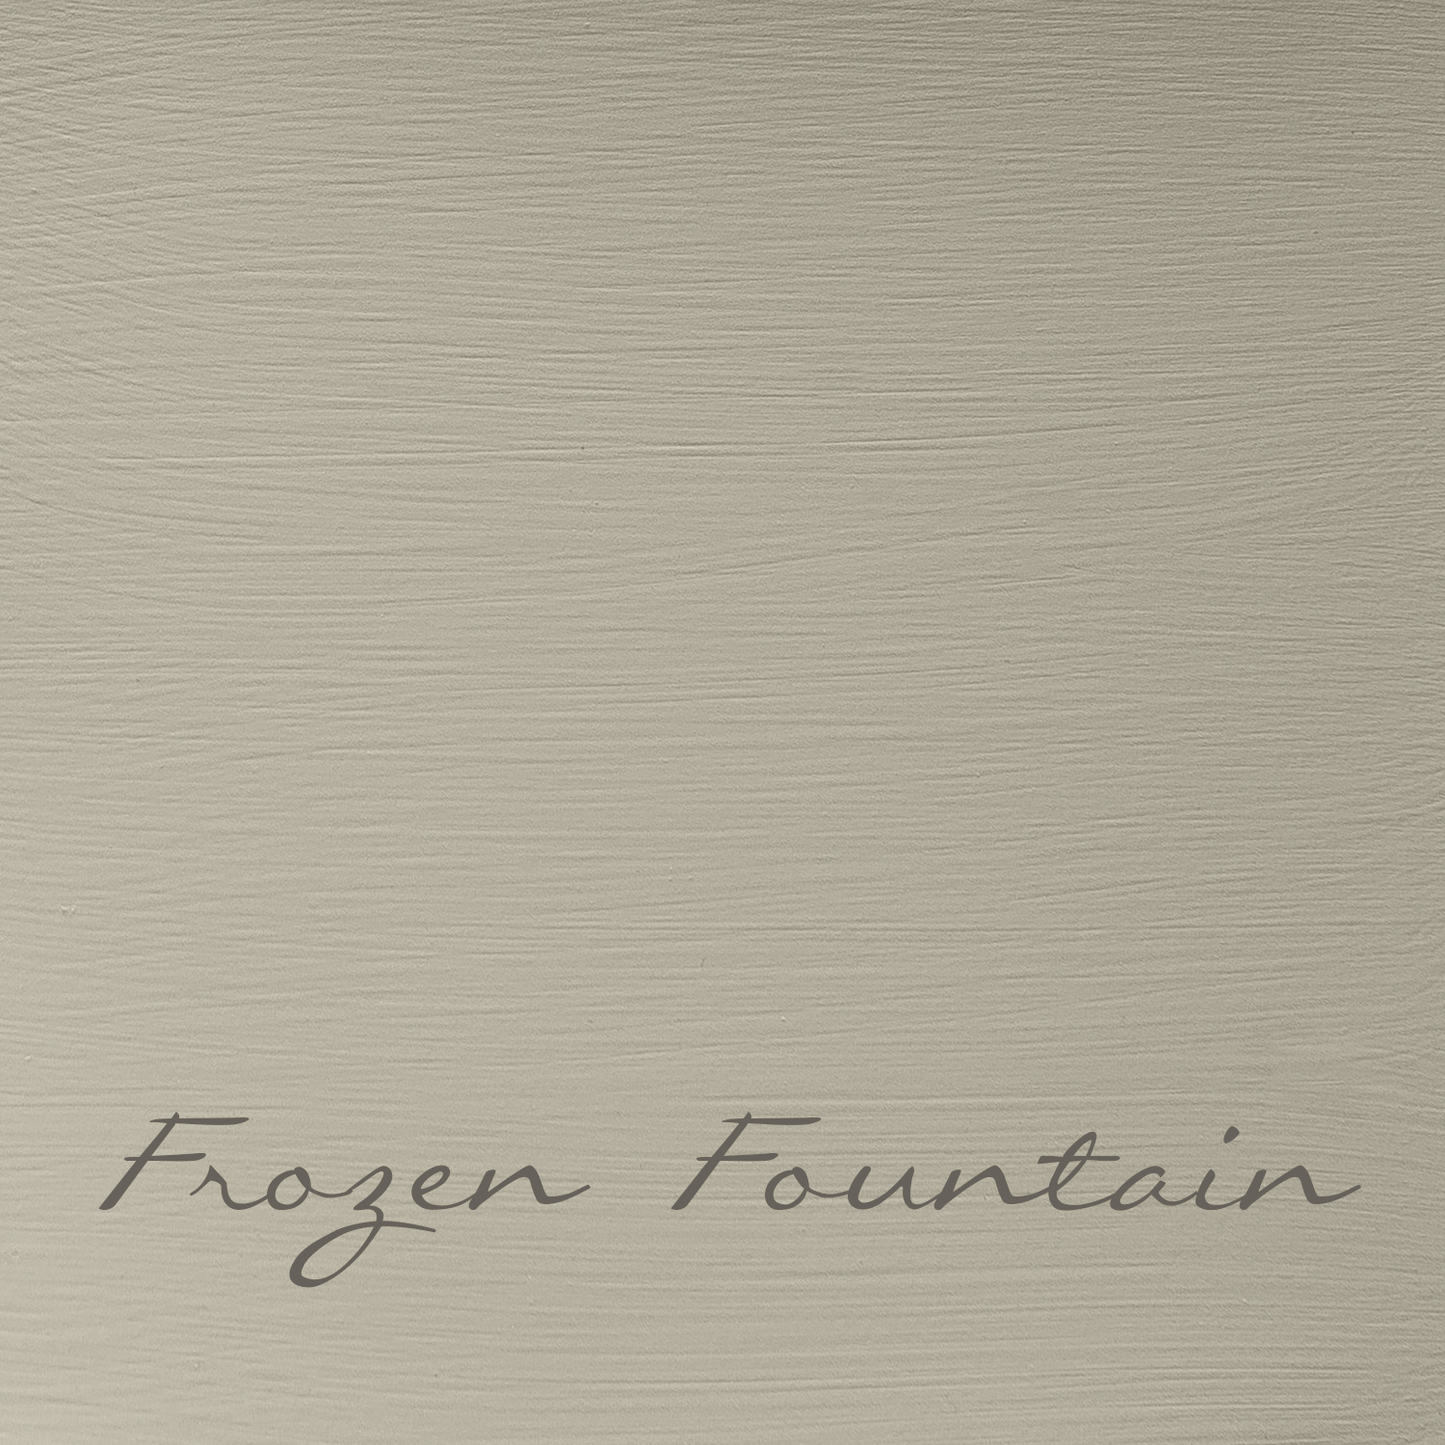 Frozen Fountain - Foresta